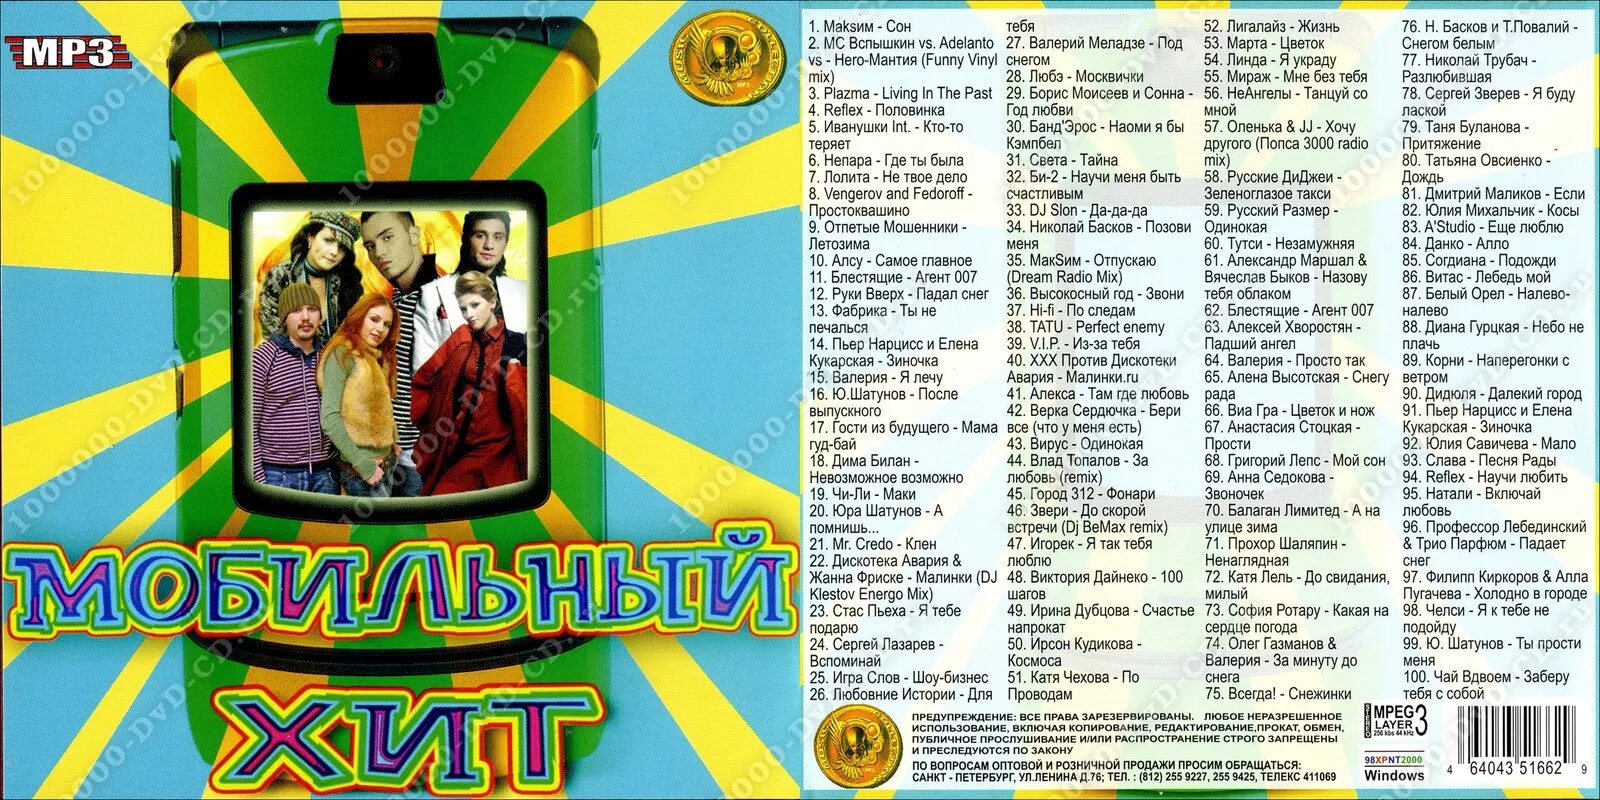 Киркоров песня руки вверх. Диски с песнями. DVD диск с песнями 2000. Двд диск с песнями 80-90.